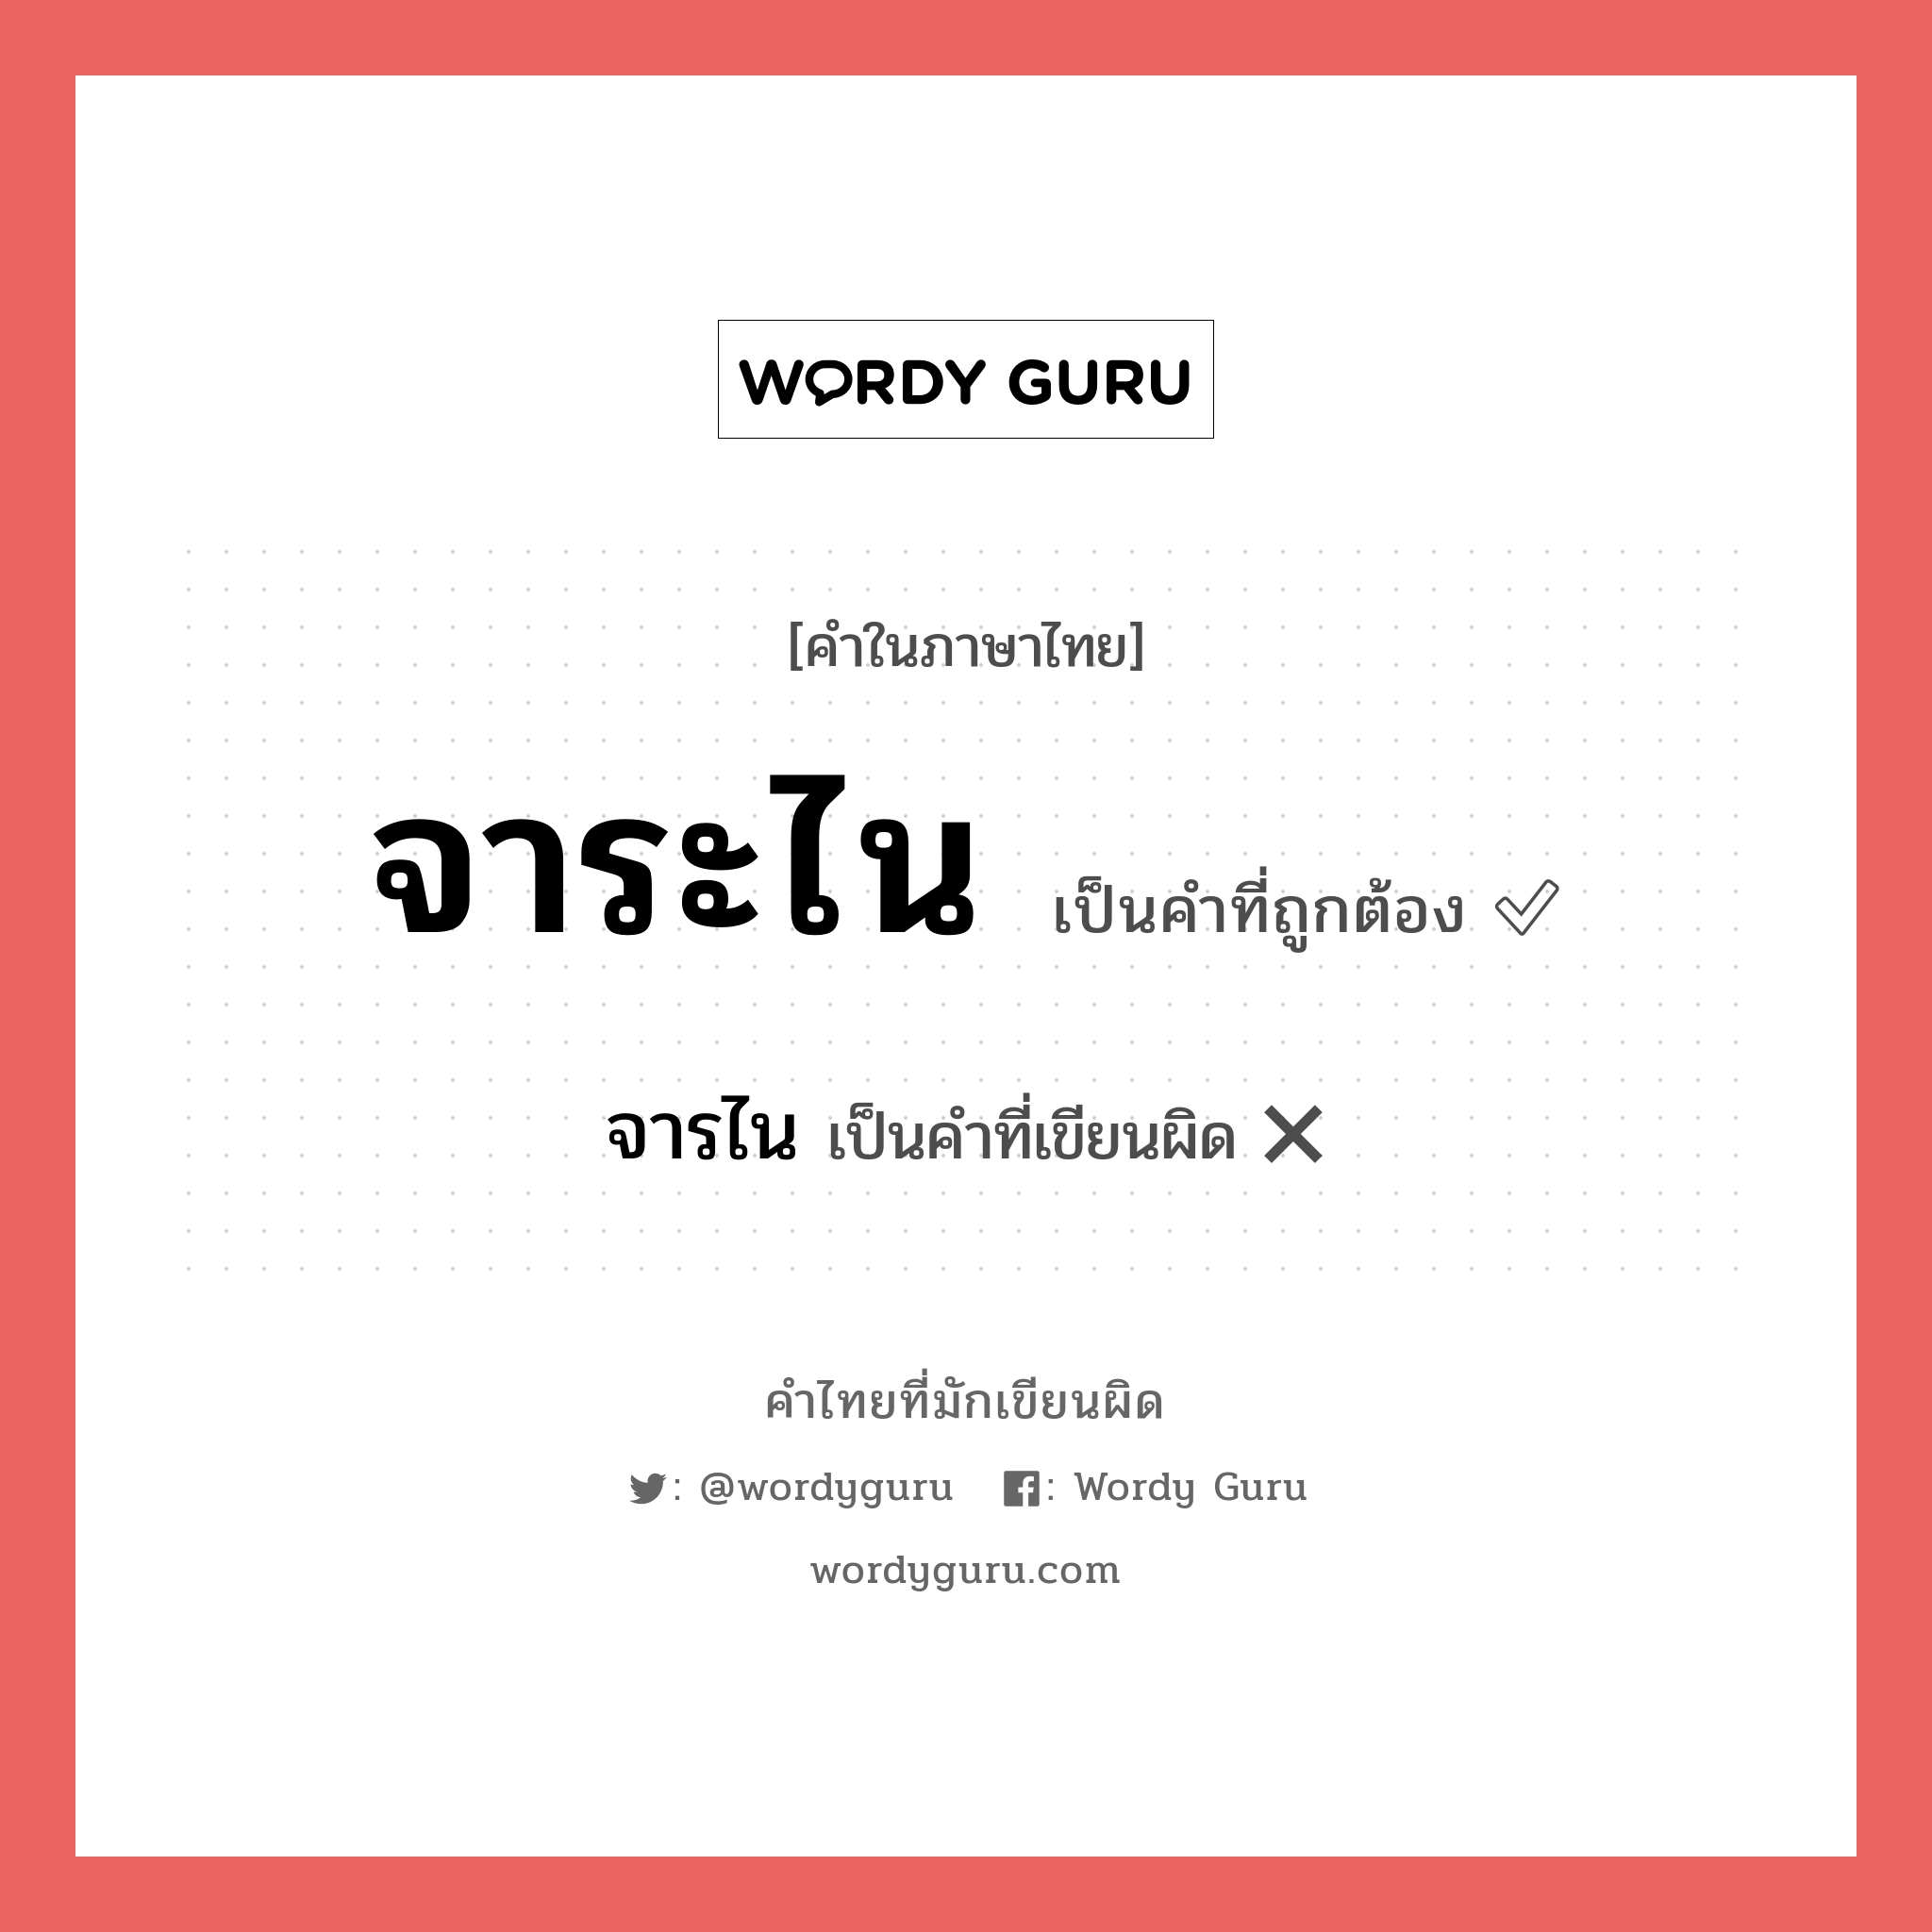 จาระไน หรือ จารไน คำไหนเขียนถูก?, คำในภาษาไทยที่มักเขียนผิด จาระไน คำที่ผิด ❌ จารไน